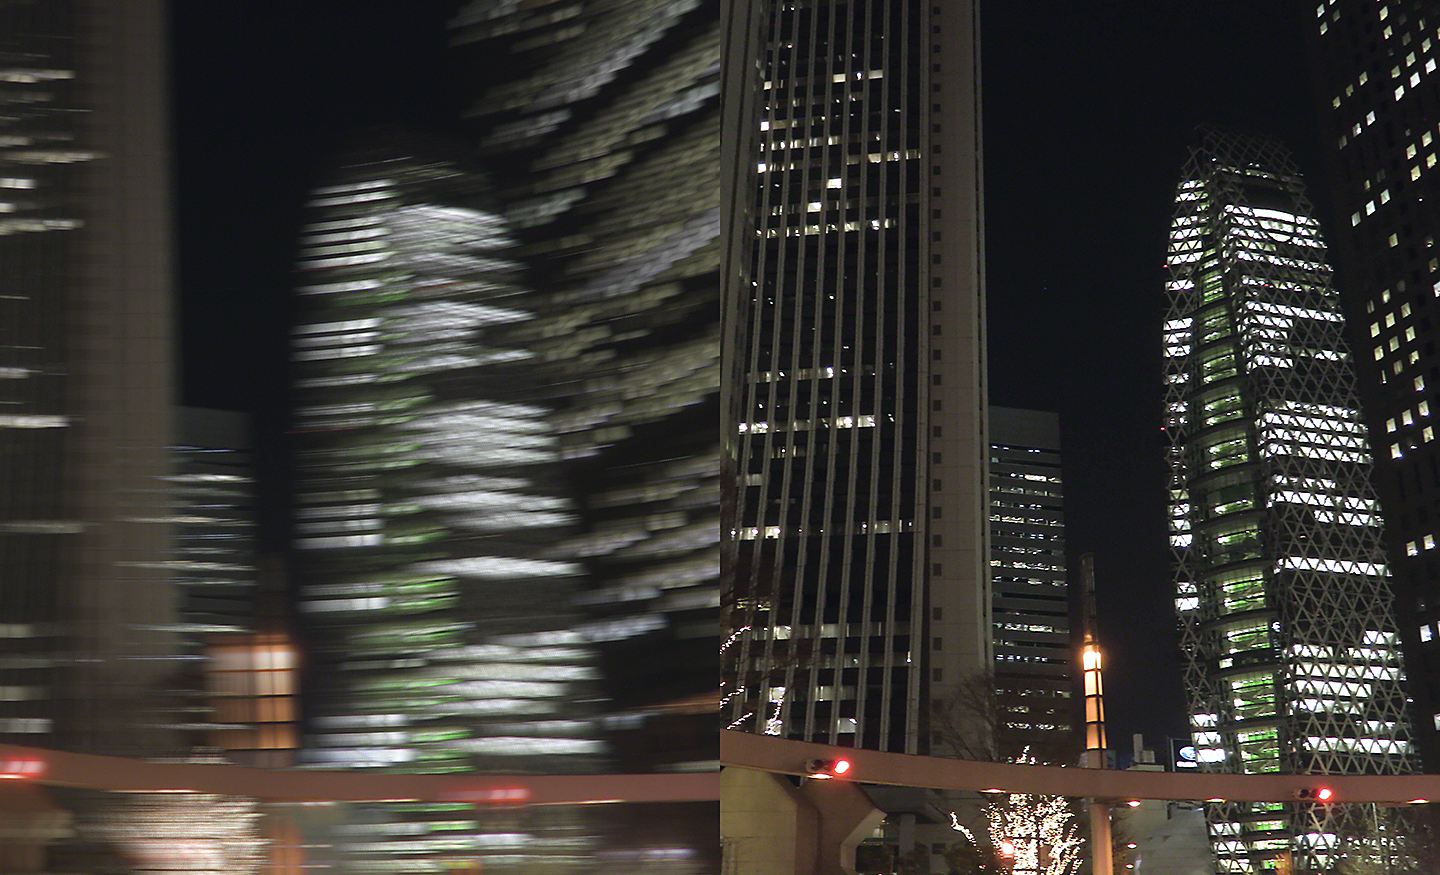 Hai hình ảnh chụp cảnh thành phố về đêm, một hình mờ, hình kia được lấy nét sắc nét.